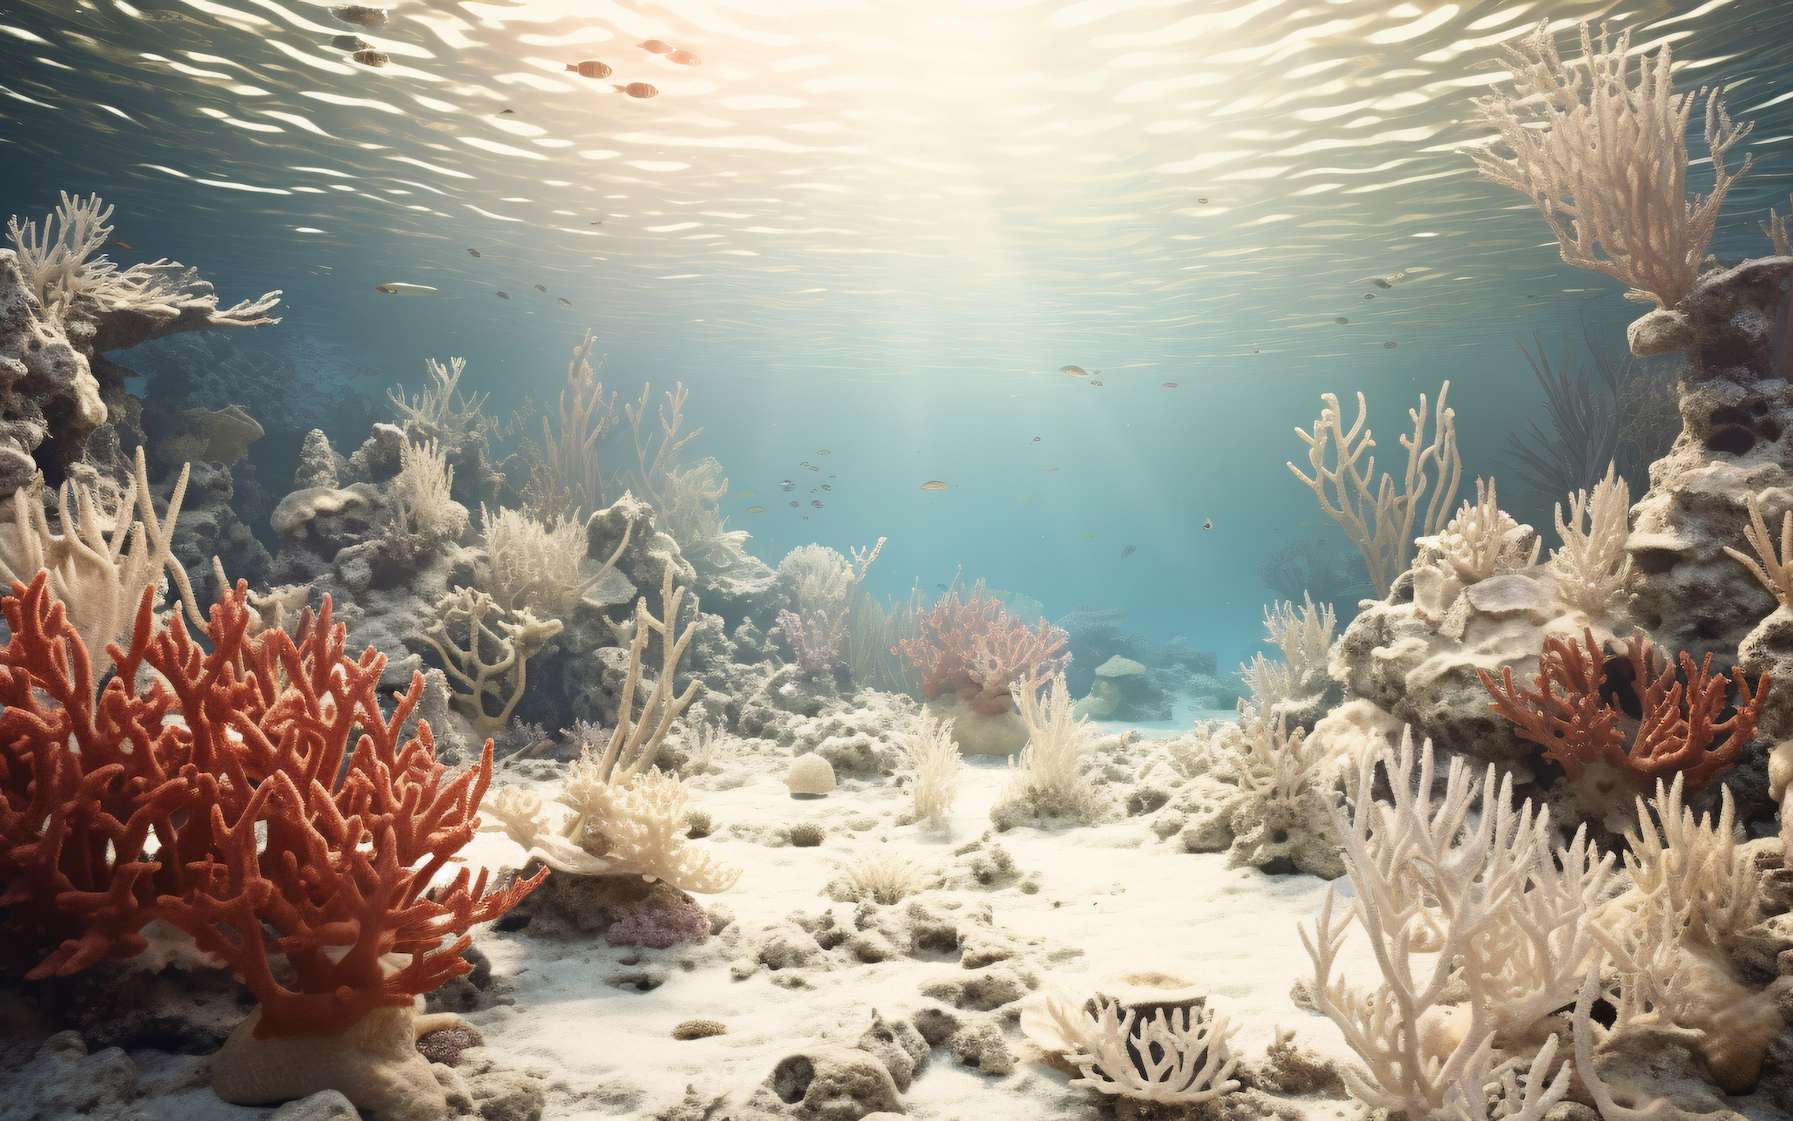 Le blanchissement du corail cache des changements inquiétants dans les océans